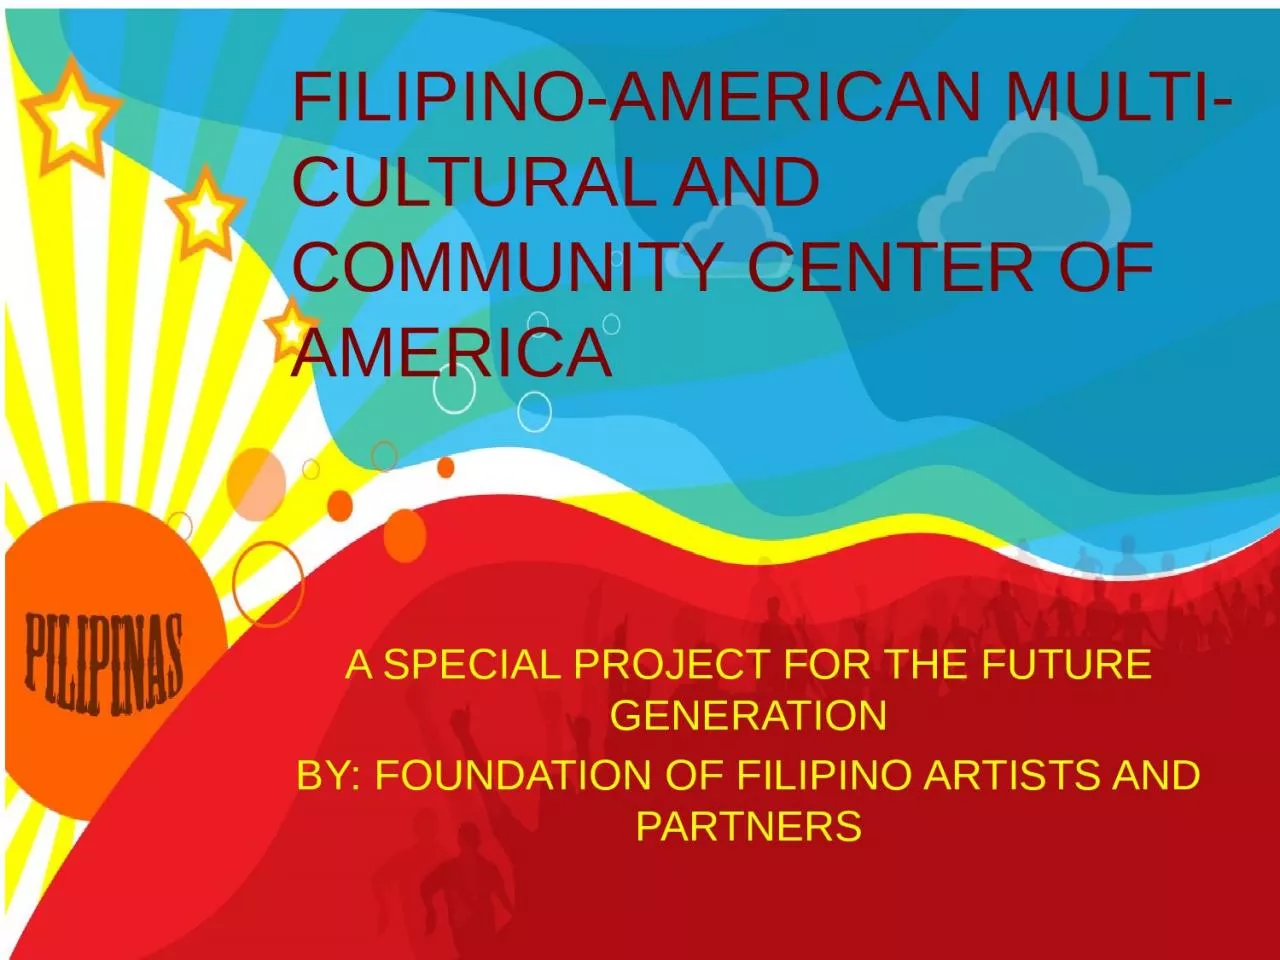 FILIPINO-AMERICAN MULTI-CULTURAL AND COMMUNITY CENTER OF AMERICA